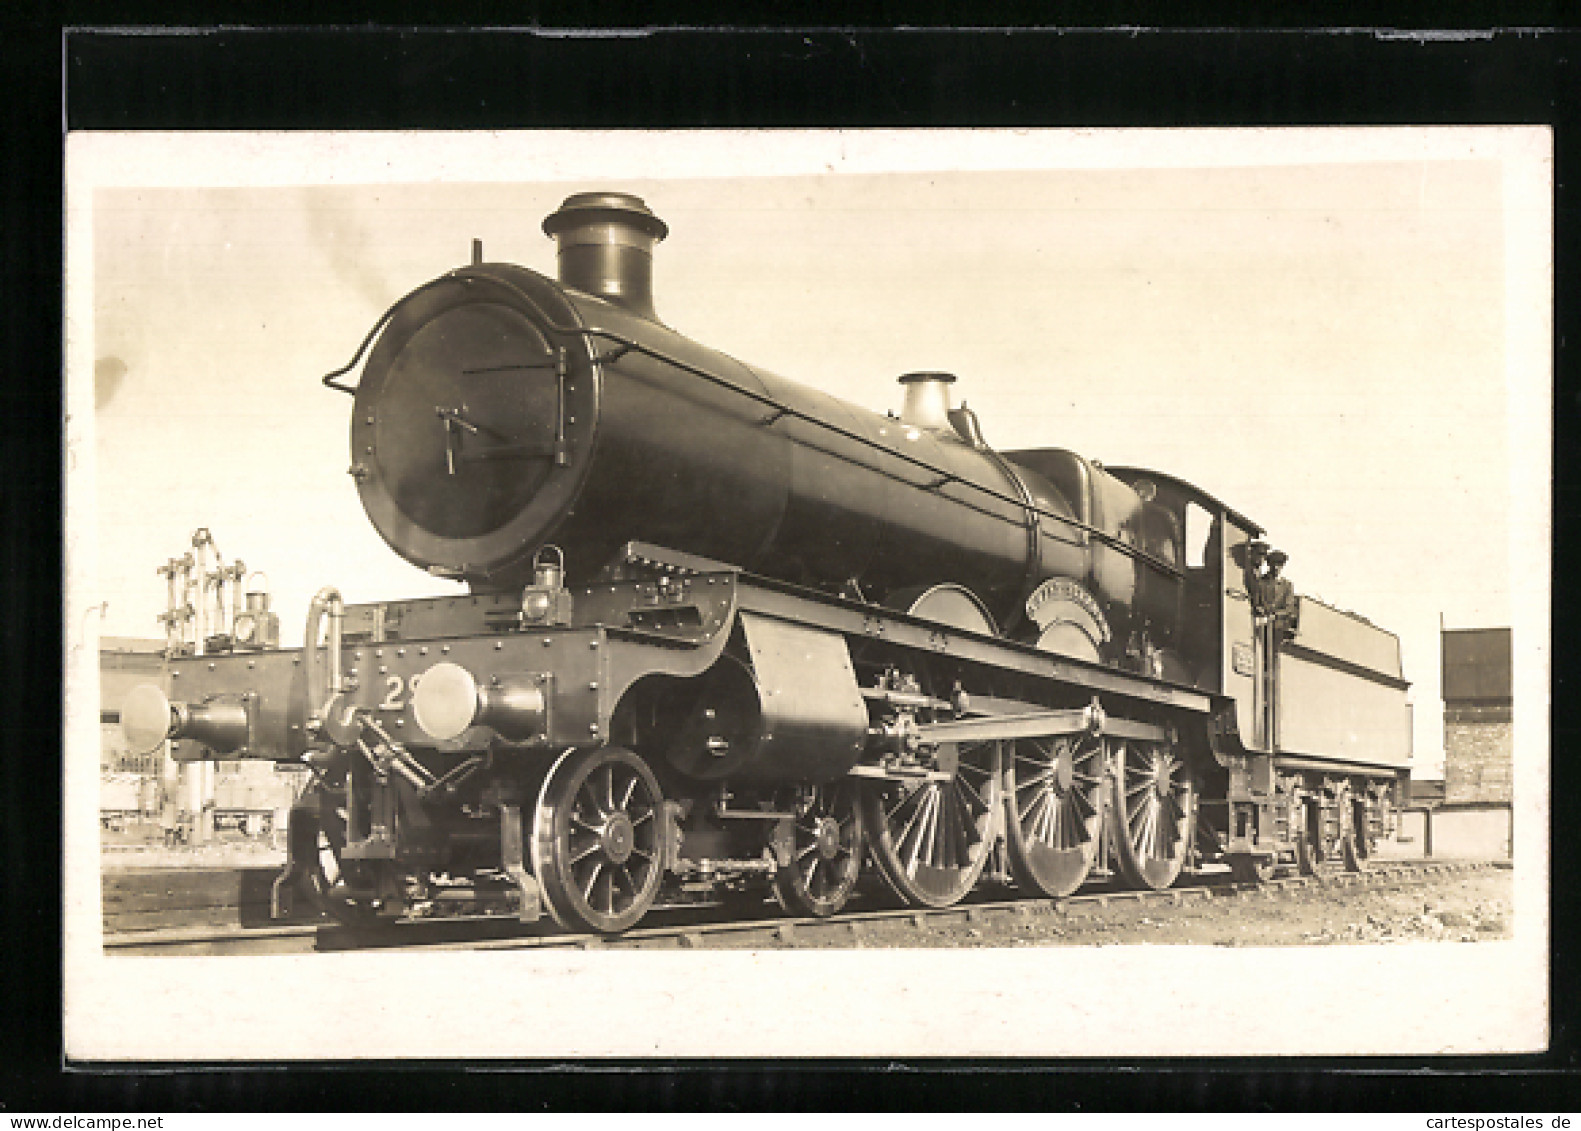 Pc Dampflokomotive Saint Stephen, Englische Eisenbahn  - Trains